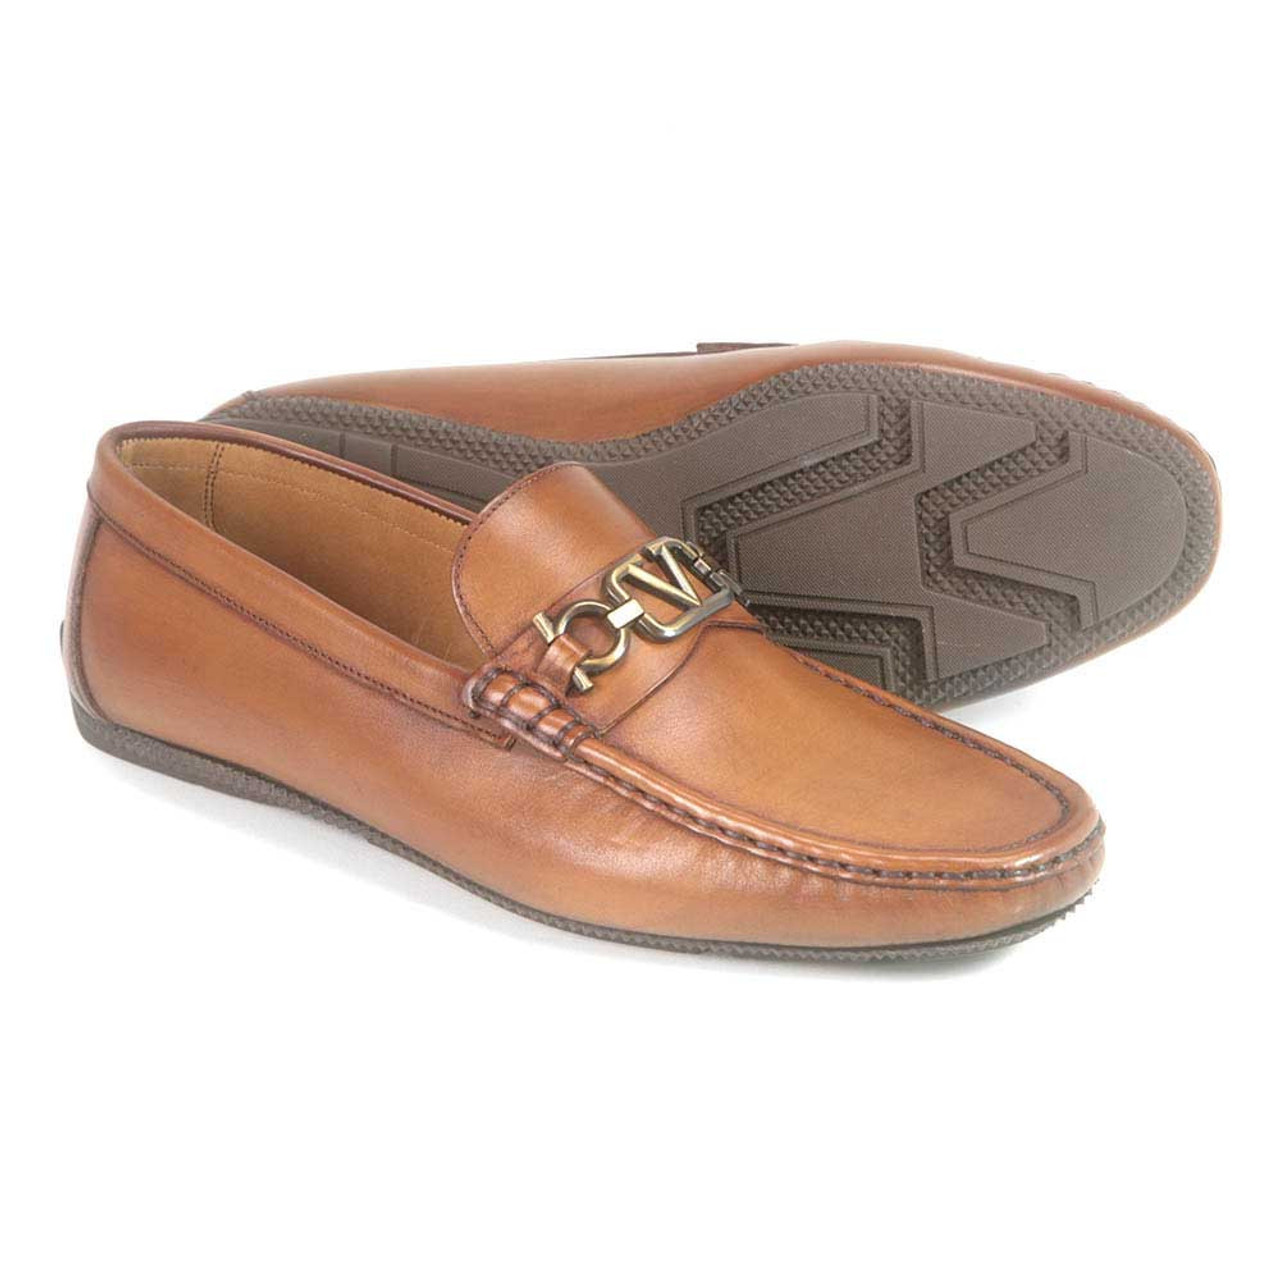 Louis Vuitton men's boat shoes  Boat shoes mens, Loafers men